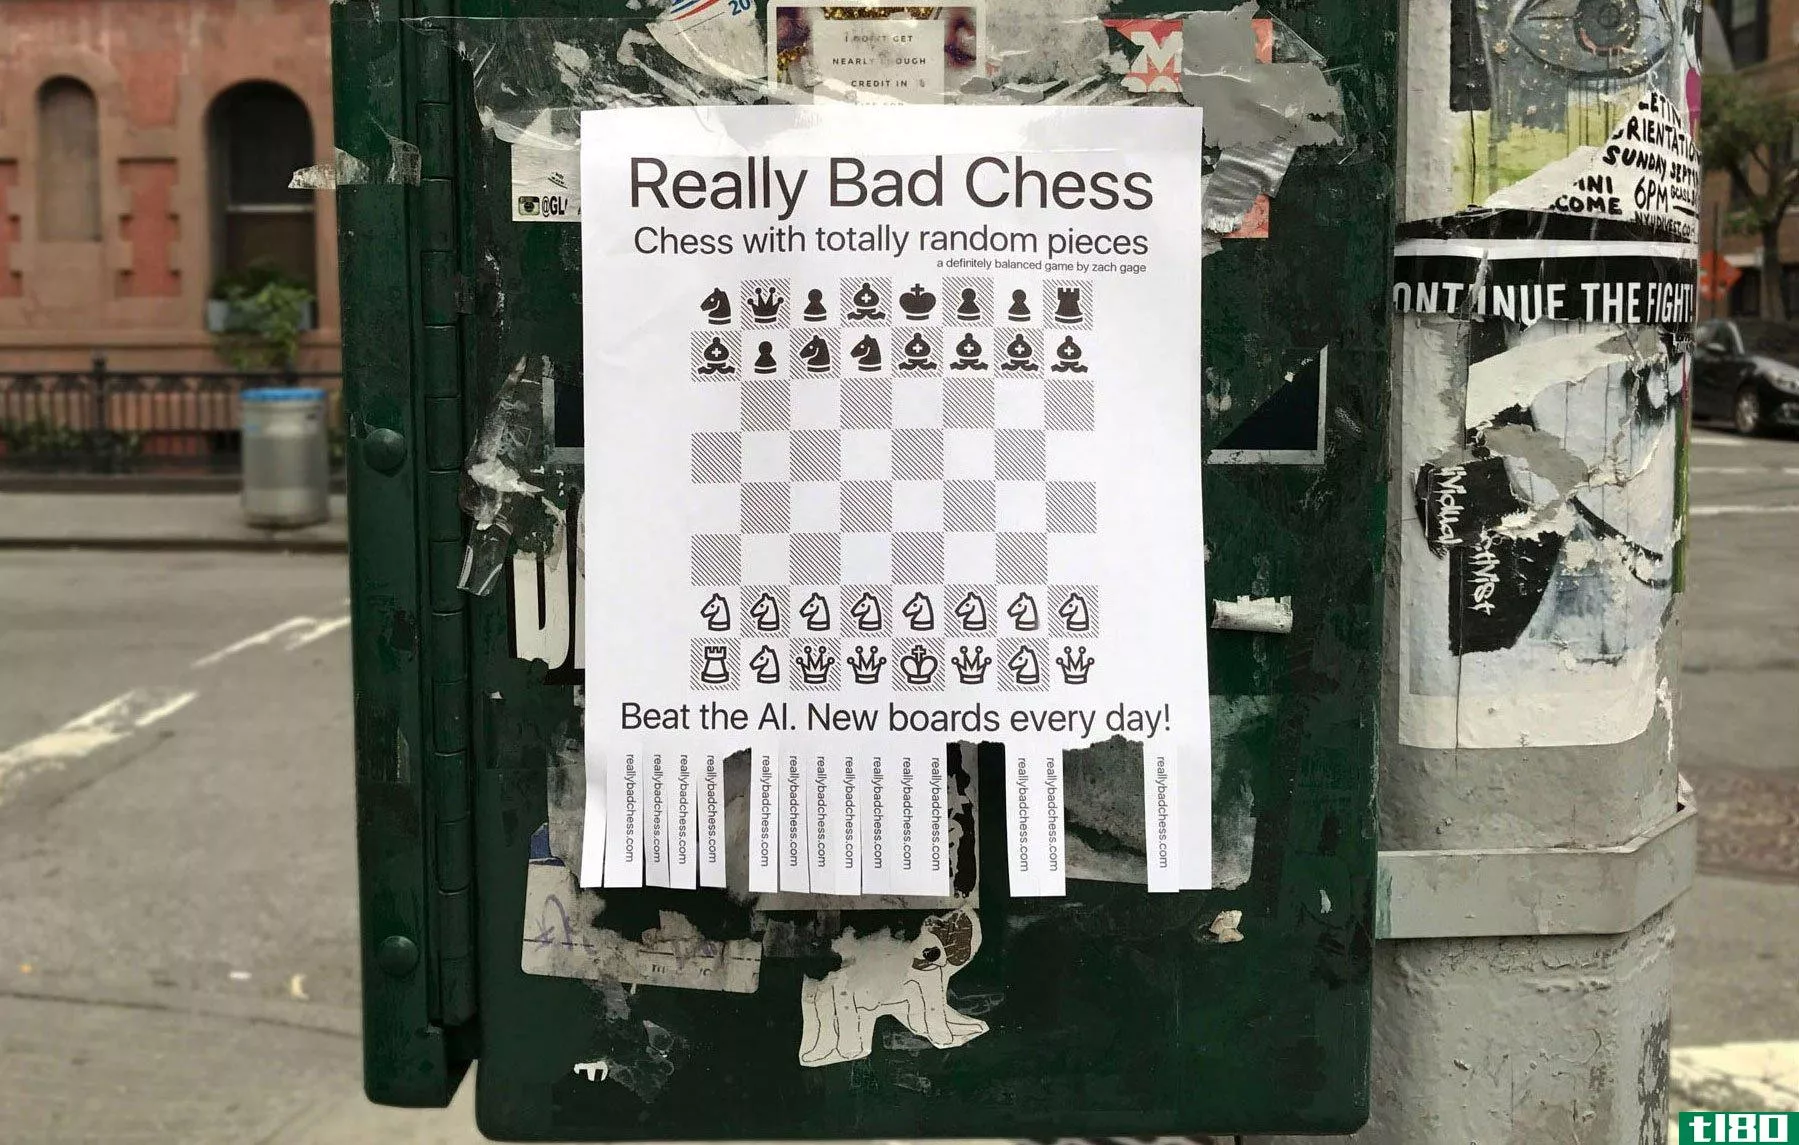 即使你下棋很差，下棋也很有趣